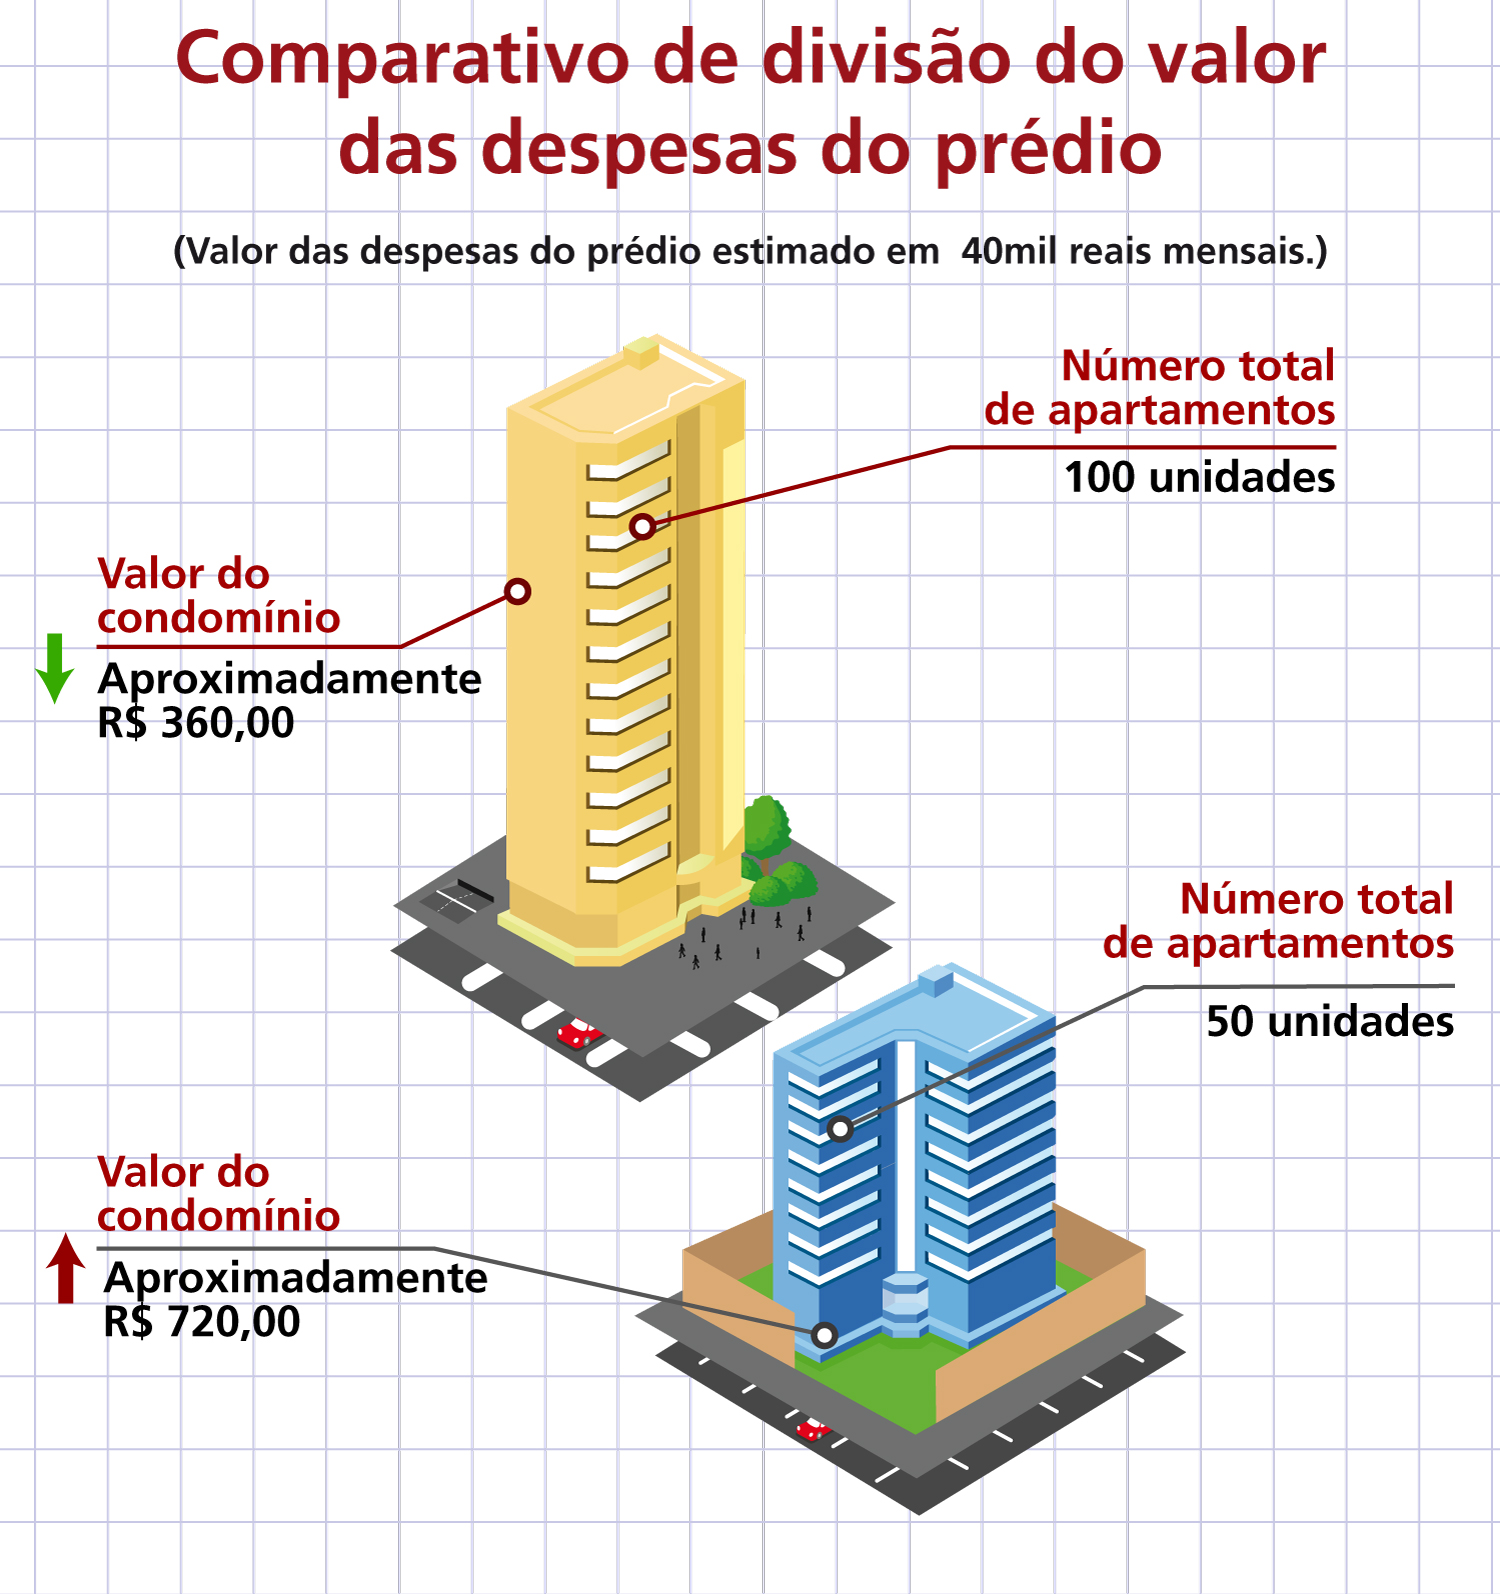 Comparativo de divisão do valor das despesas do prédio.